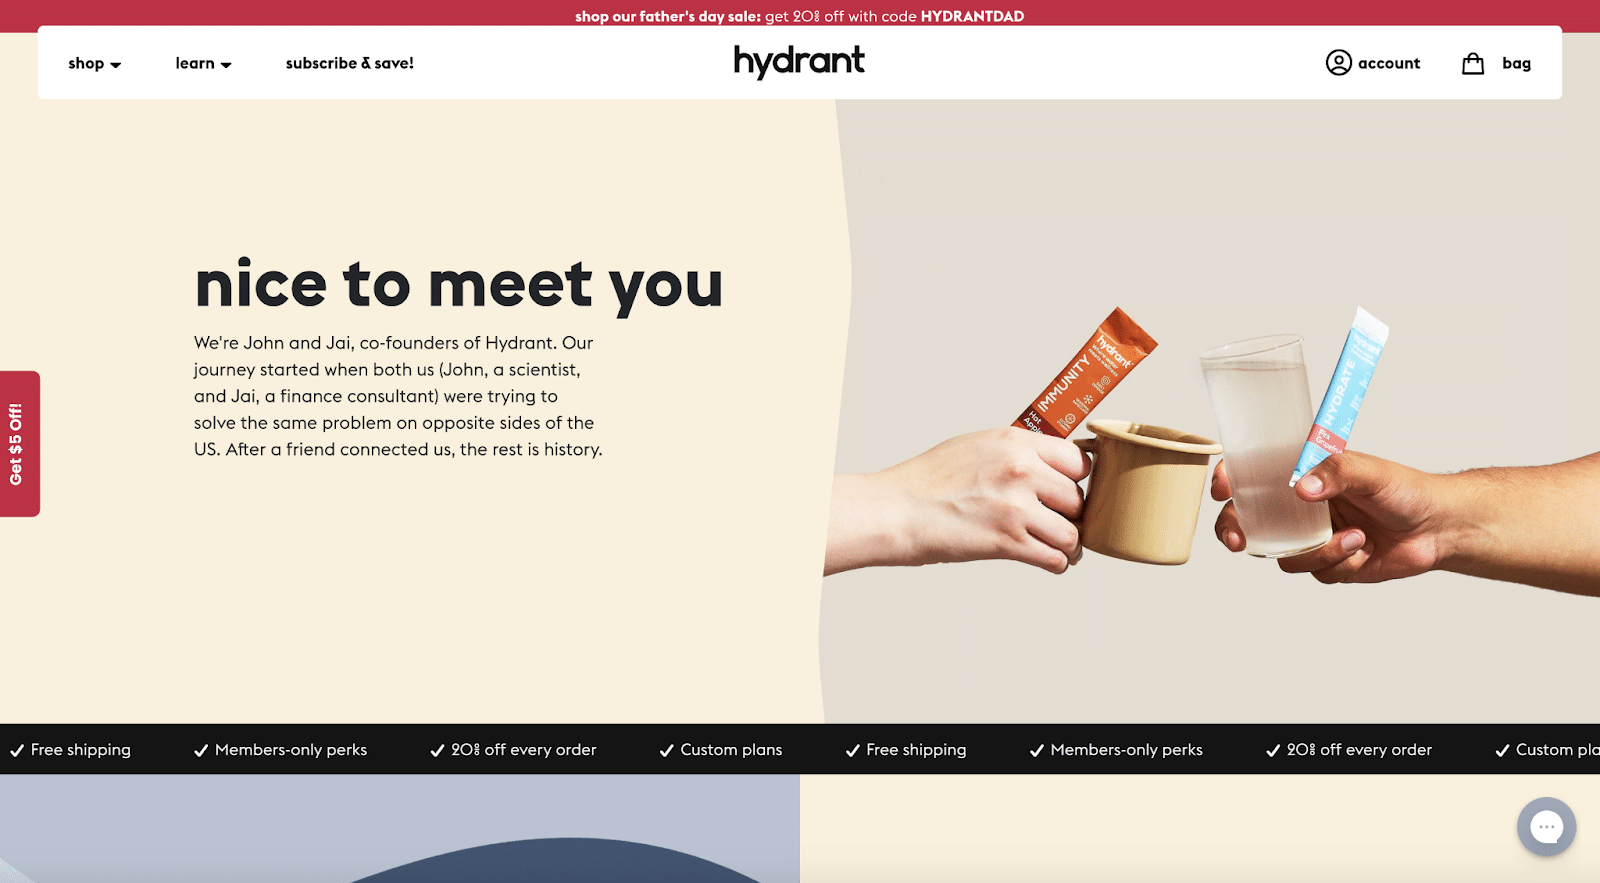 Page À propos de nous de Hydrant.